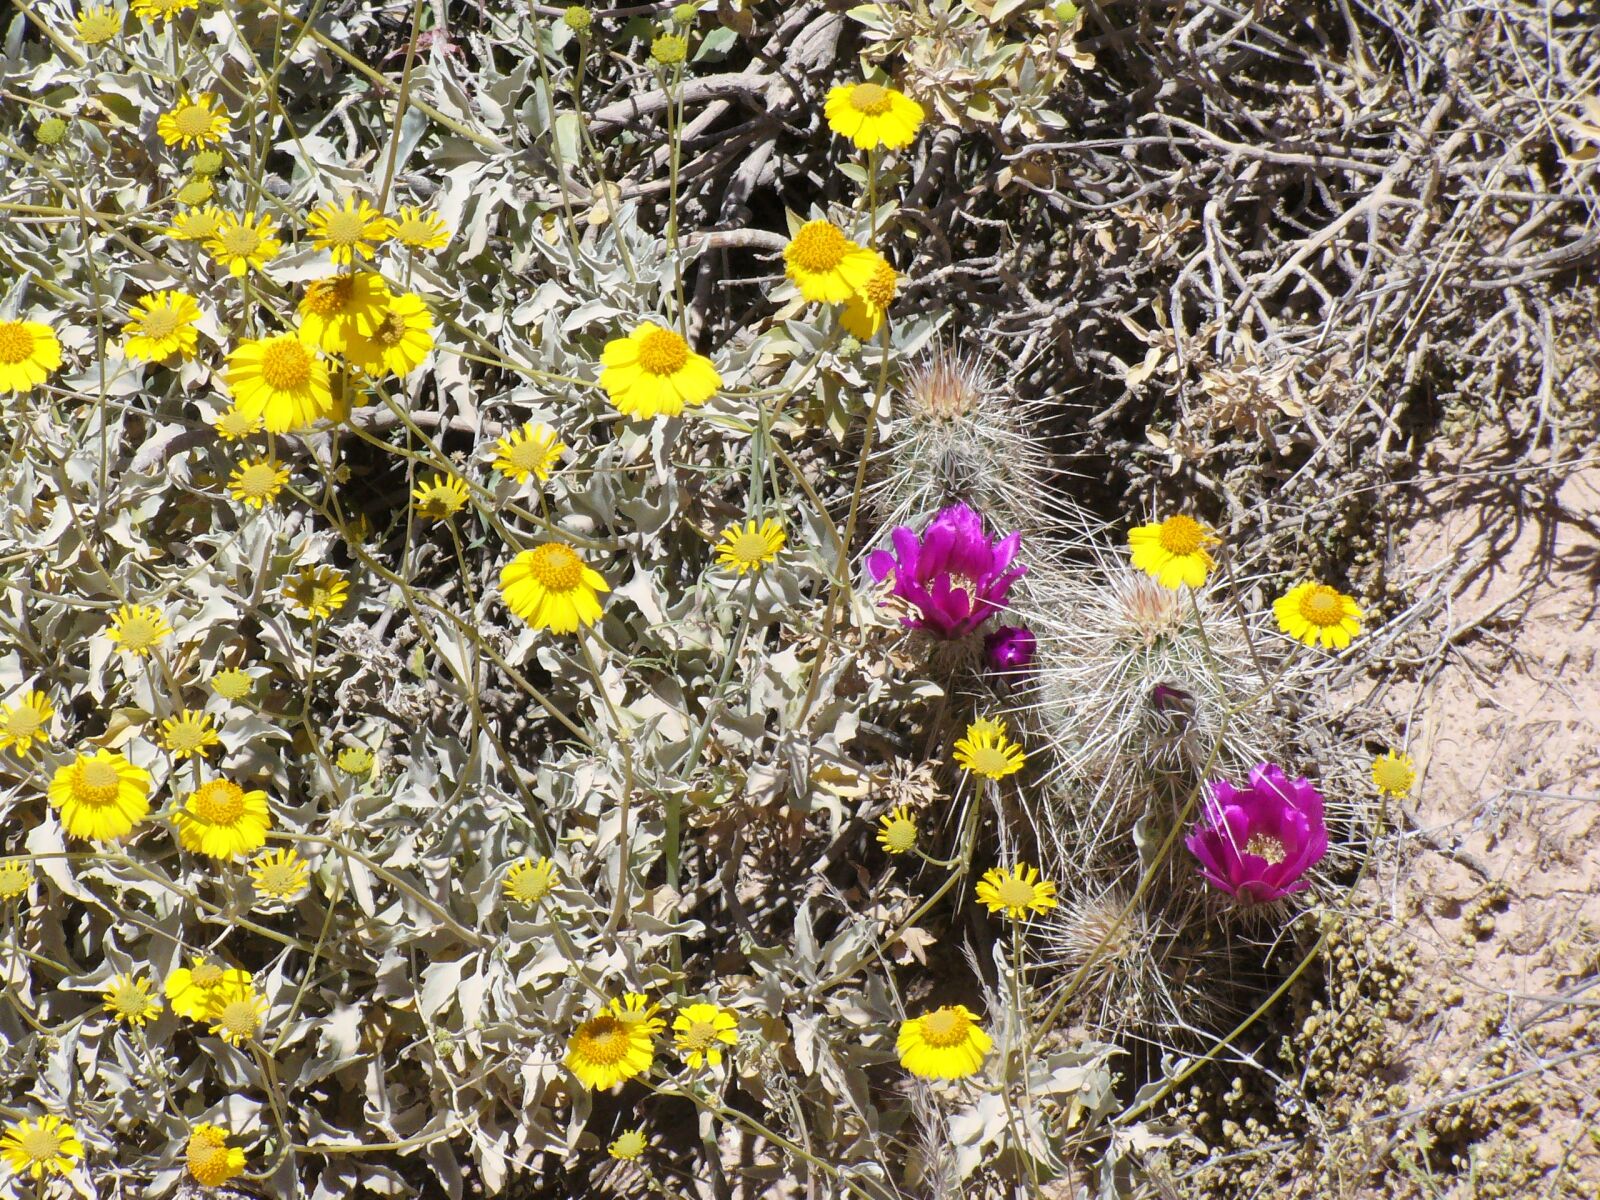 Panasonic DMC-LZ3 sample photo. Arizona, wildflowers, desert photography